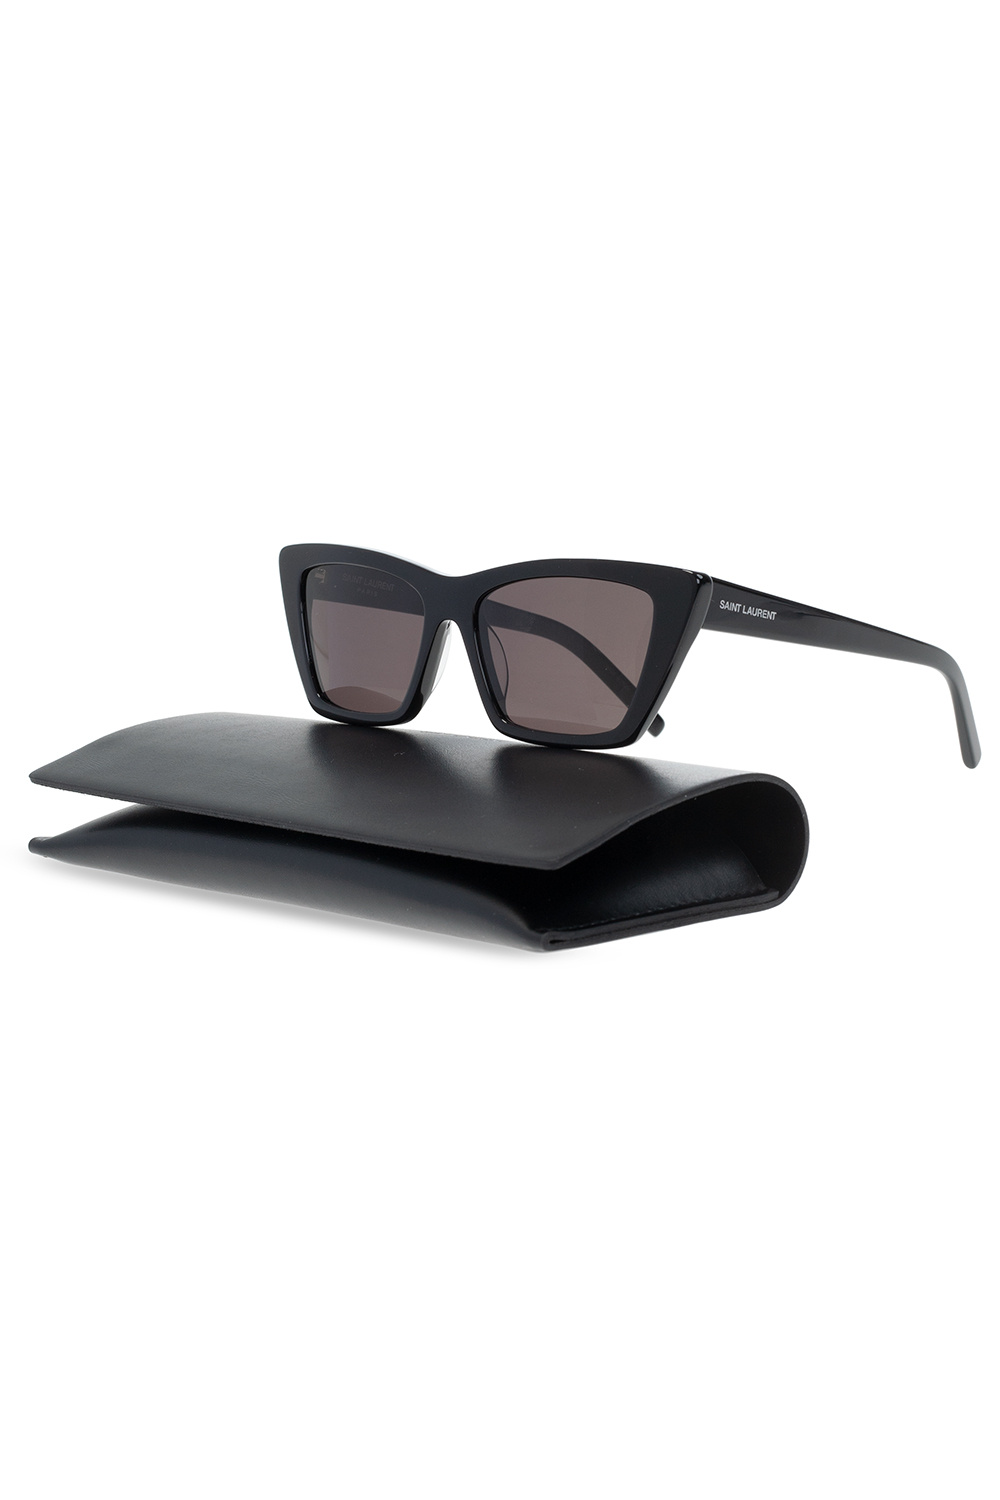 Saint Laurent 'New Wave SL 276' sunglasses | Women's Accessories 